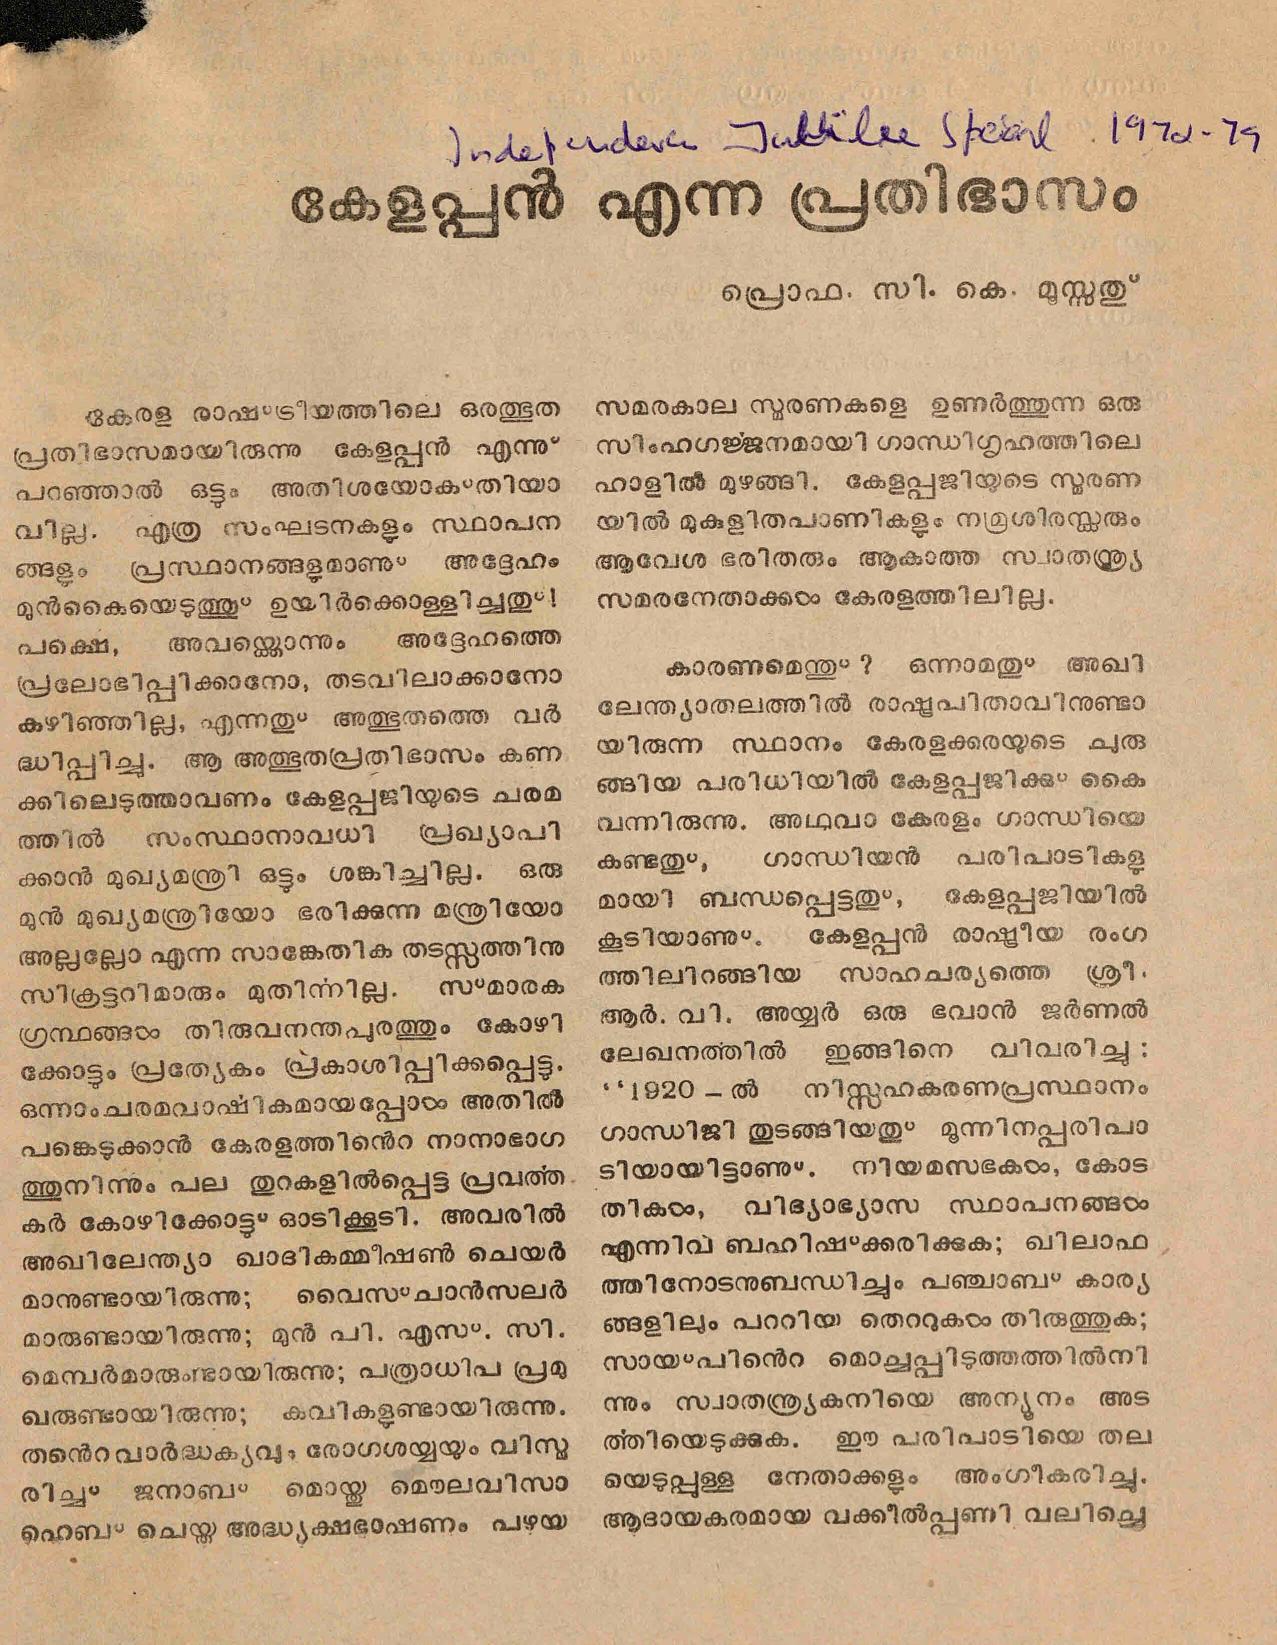 1972 - കേളപ്പൻ എന്ന പ്രതിഭാസം - സി കെ മൂസ്സത്